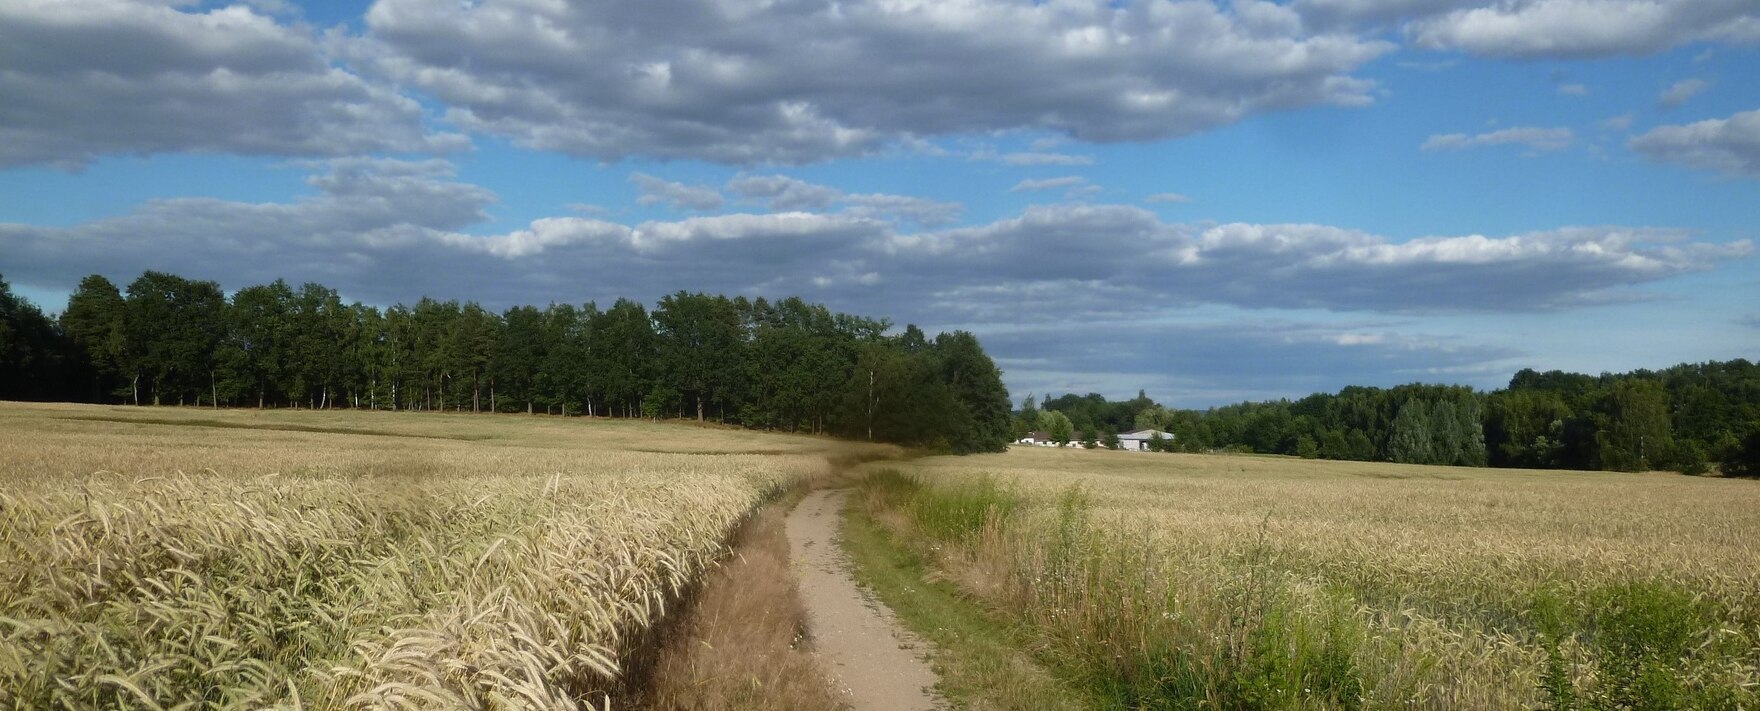 Reifes Getreidefeld mit Feldweg im Hintergrund Wald und ein landwirtschaftlicher Hof, blauer Himmel mit Wolken